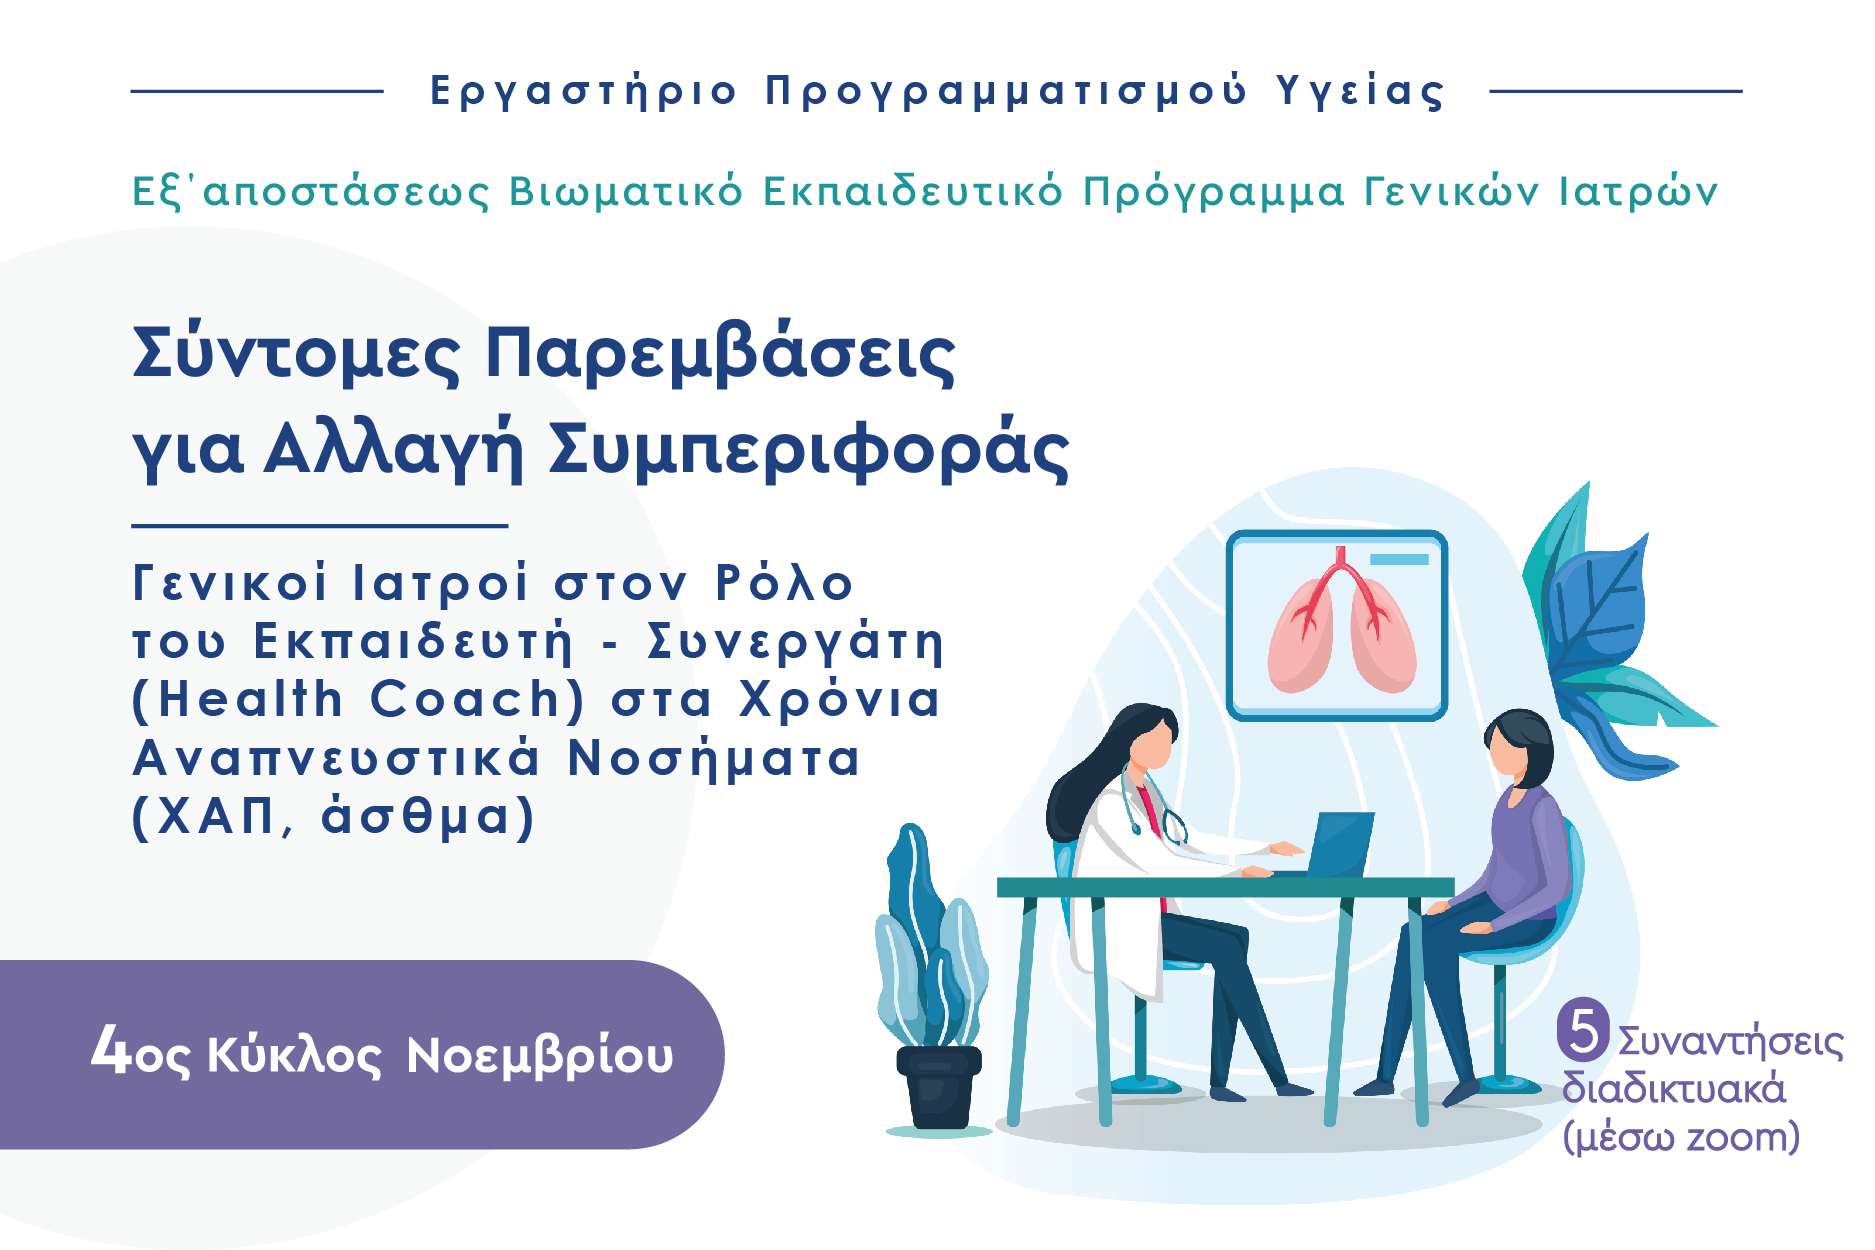 4ος KYKΛΟΣ: Γενικοί Ιατροί στον Ρόλο του Εκπαιδευτή–Συνεργάτη (Health Coach) στα Χρόνια Αναπνευστικά Νοσήματα (XAΠ,άσθμα)